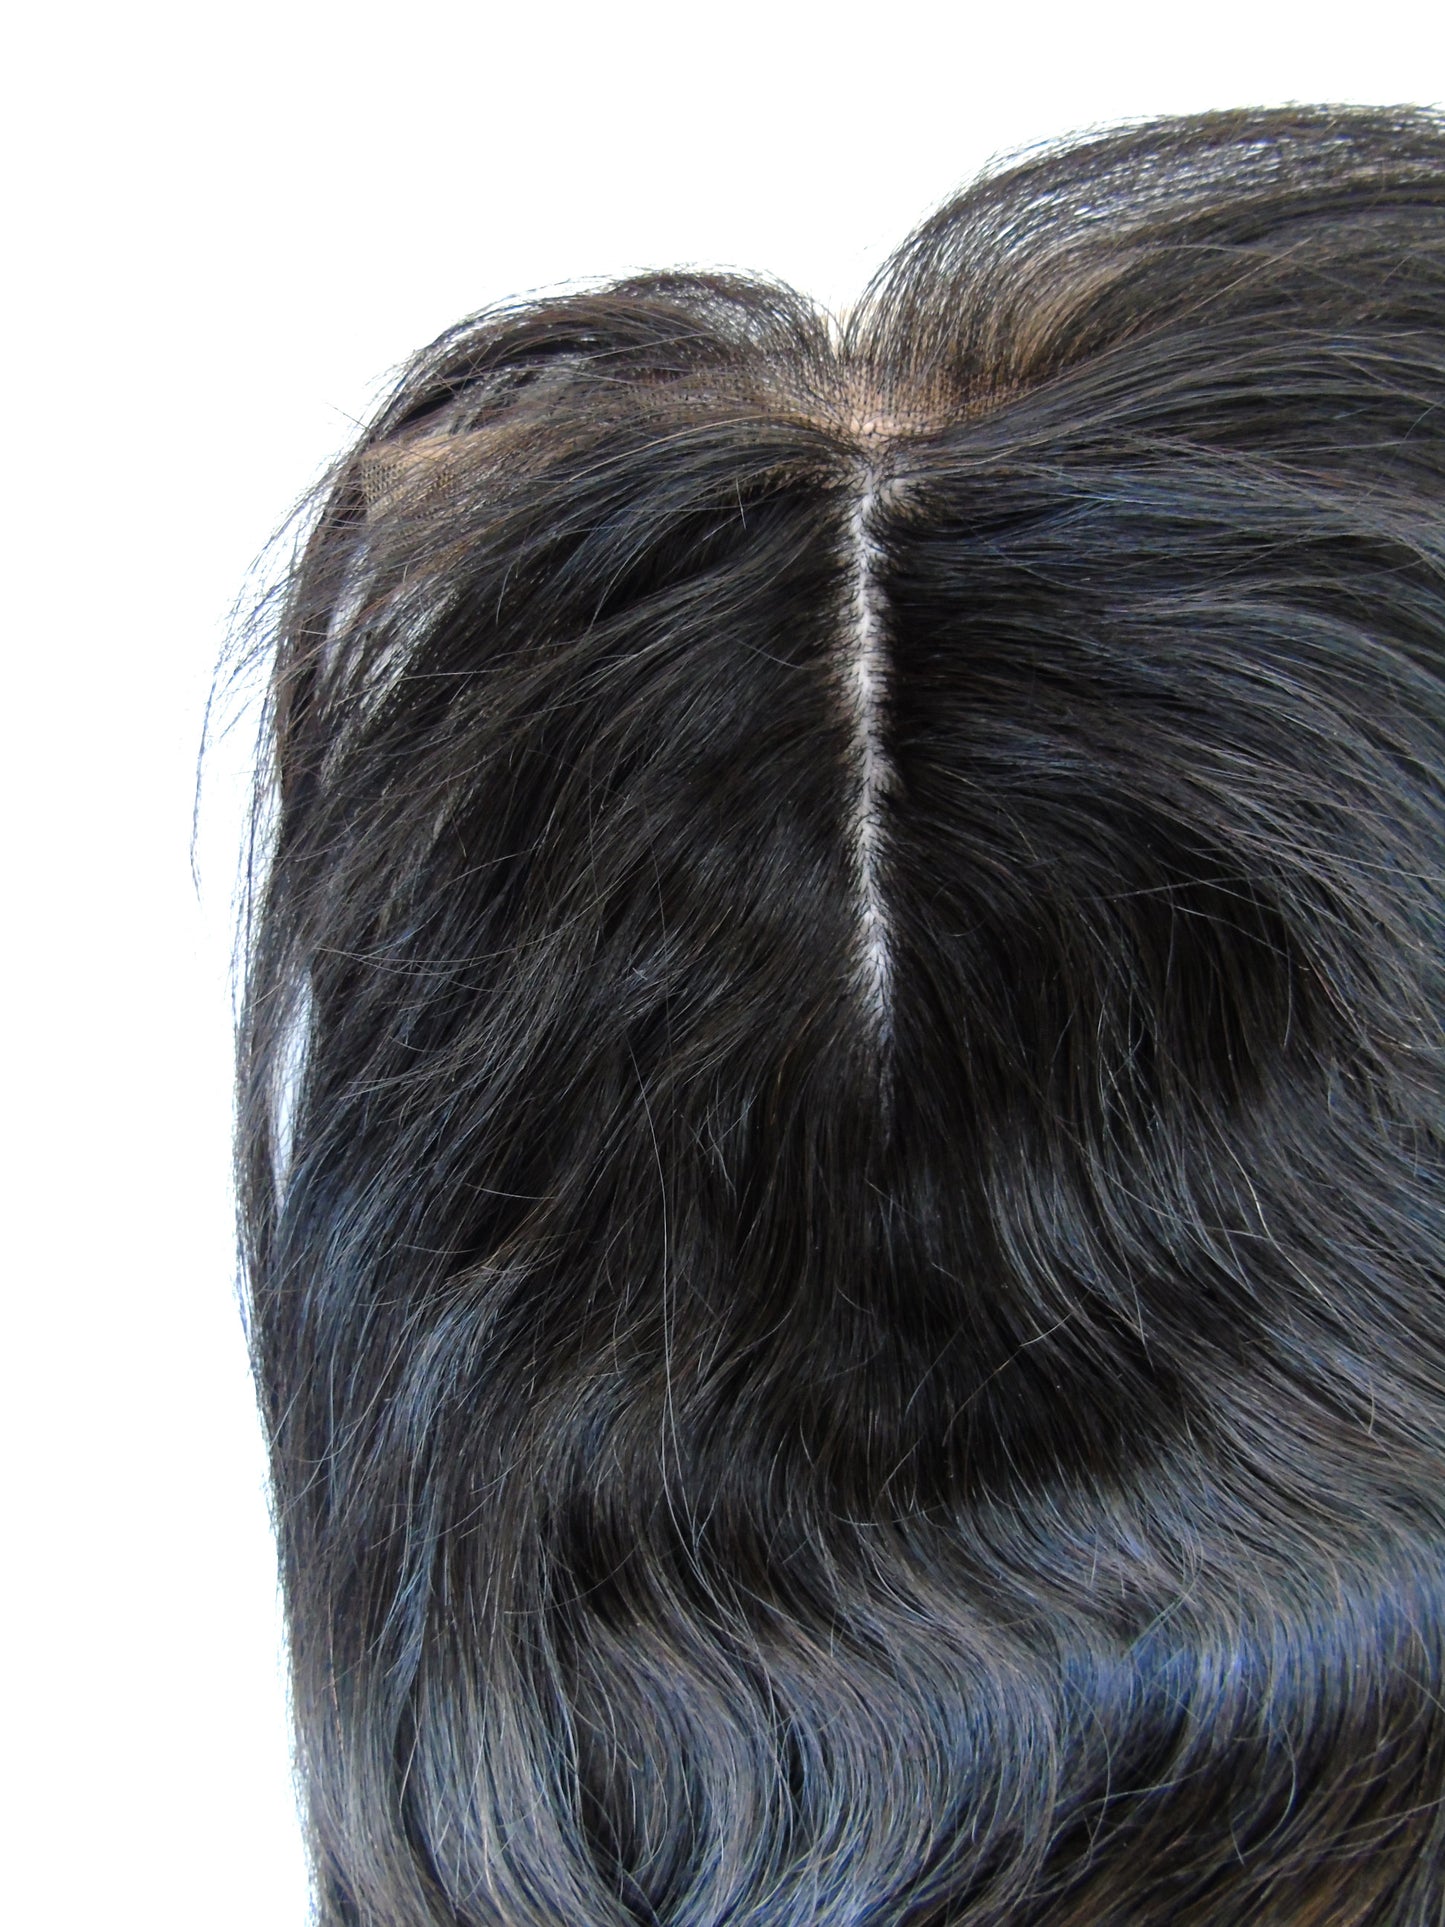 Fermeture à base de soie vierge brésilienne Remy, 6"x 9", 10 pouces, droite - Liste personnalisée - Cheveux vierges et beauté, les meilleures extensions de cheveux, vrais cheveux humains vierges.